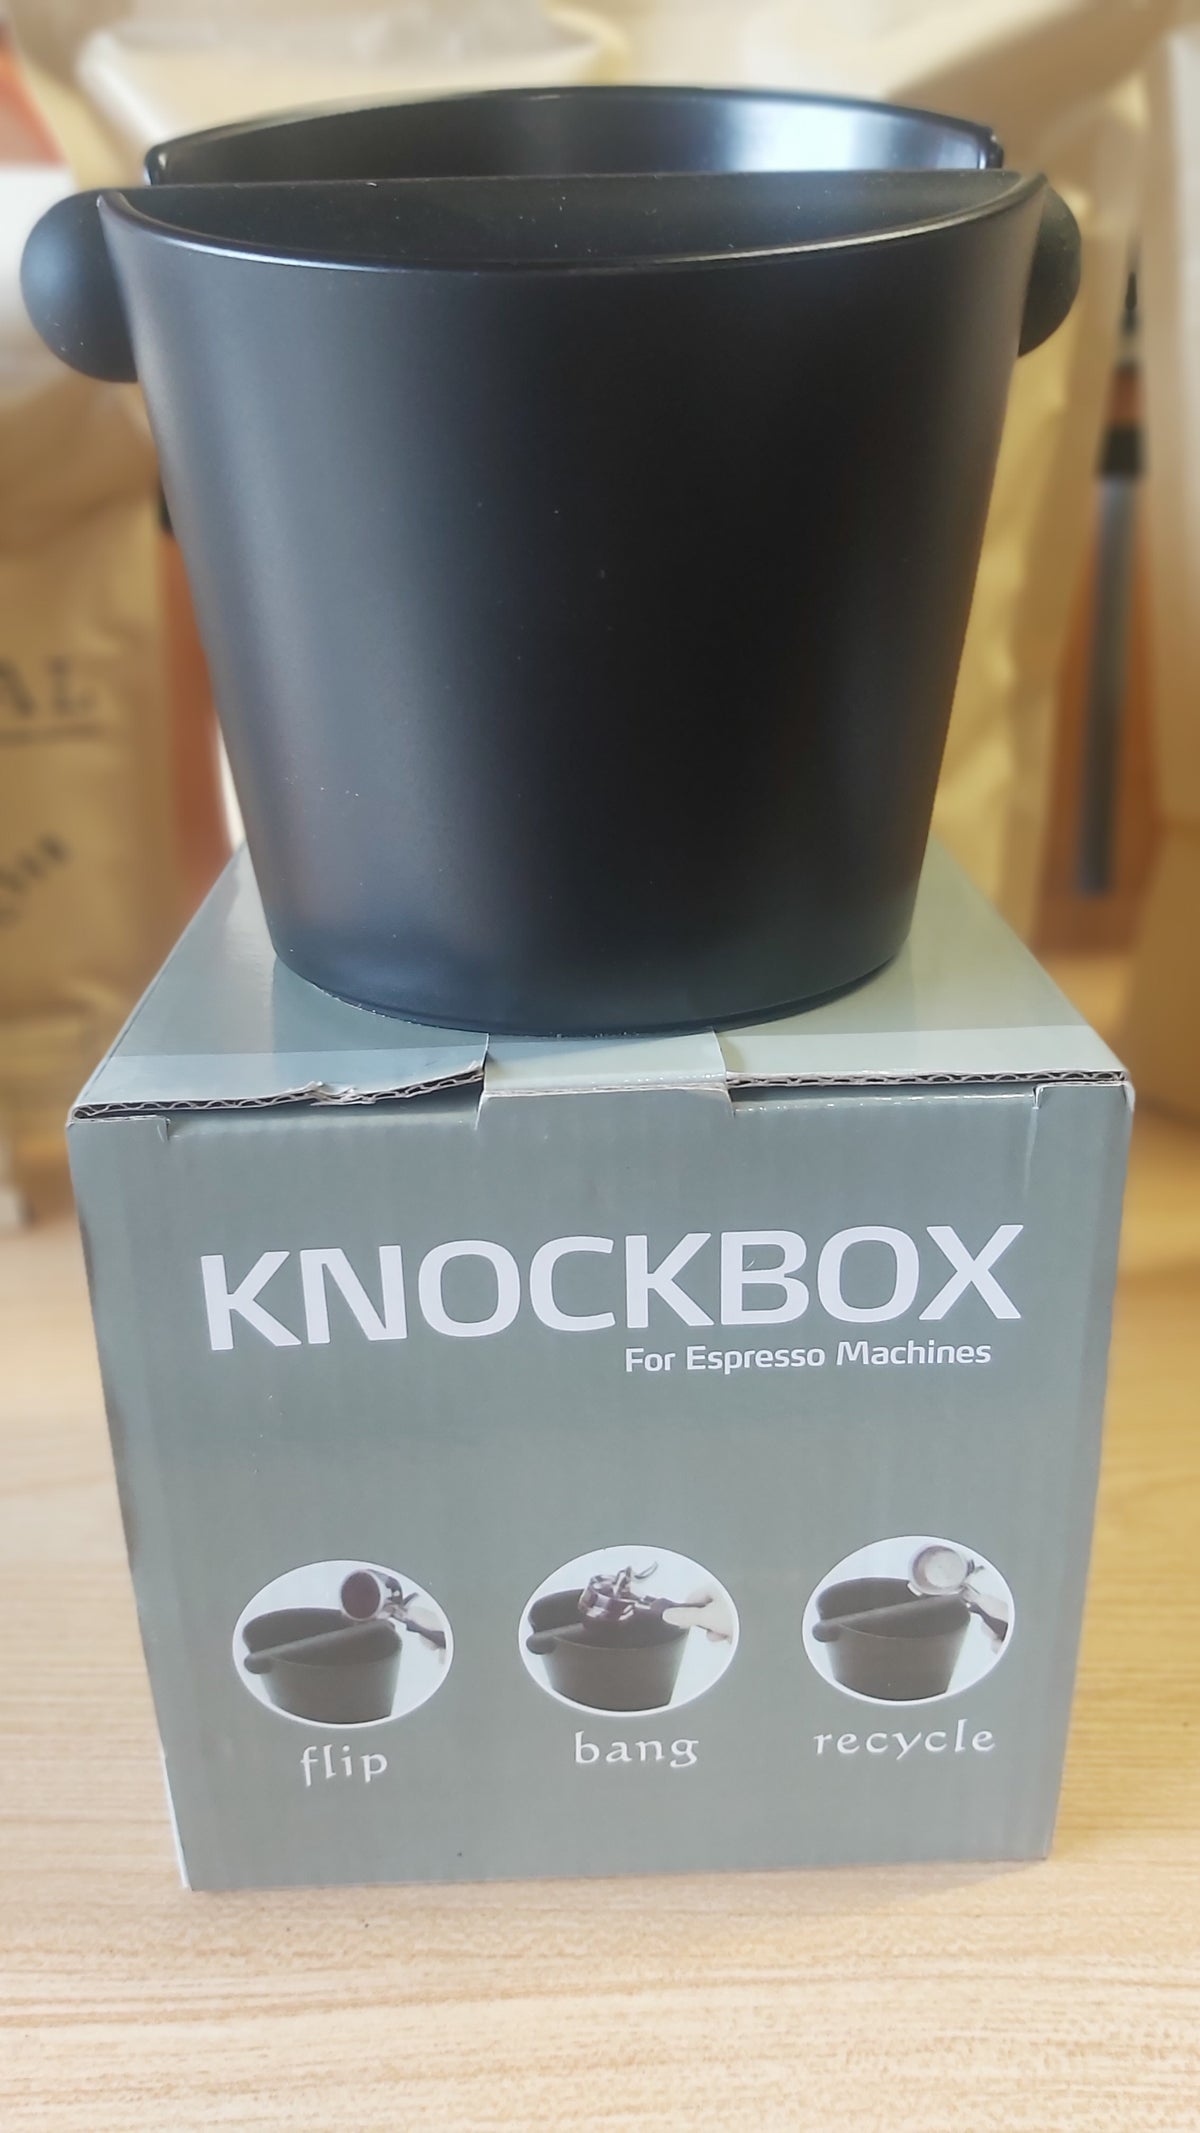 Domestic knockbox